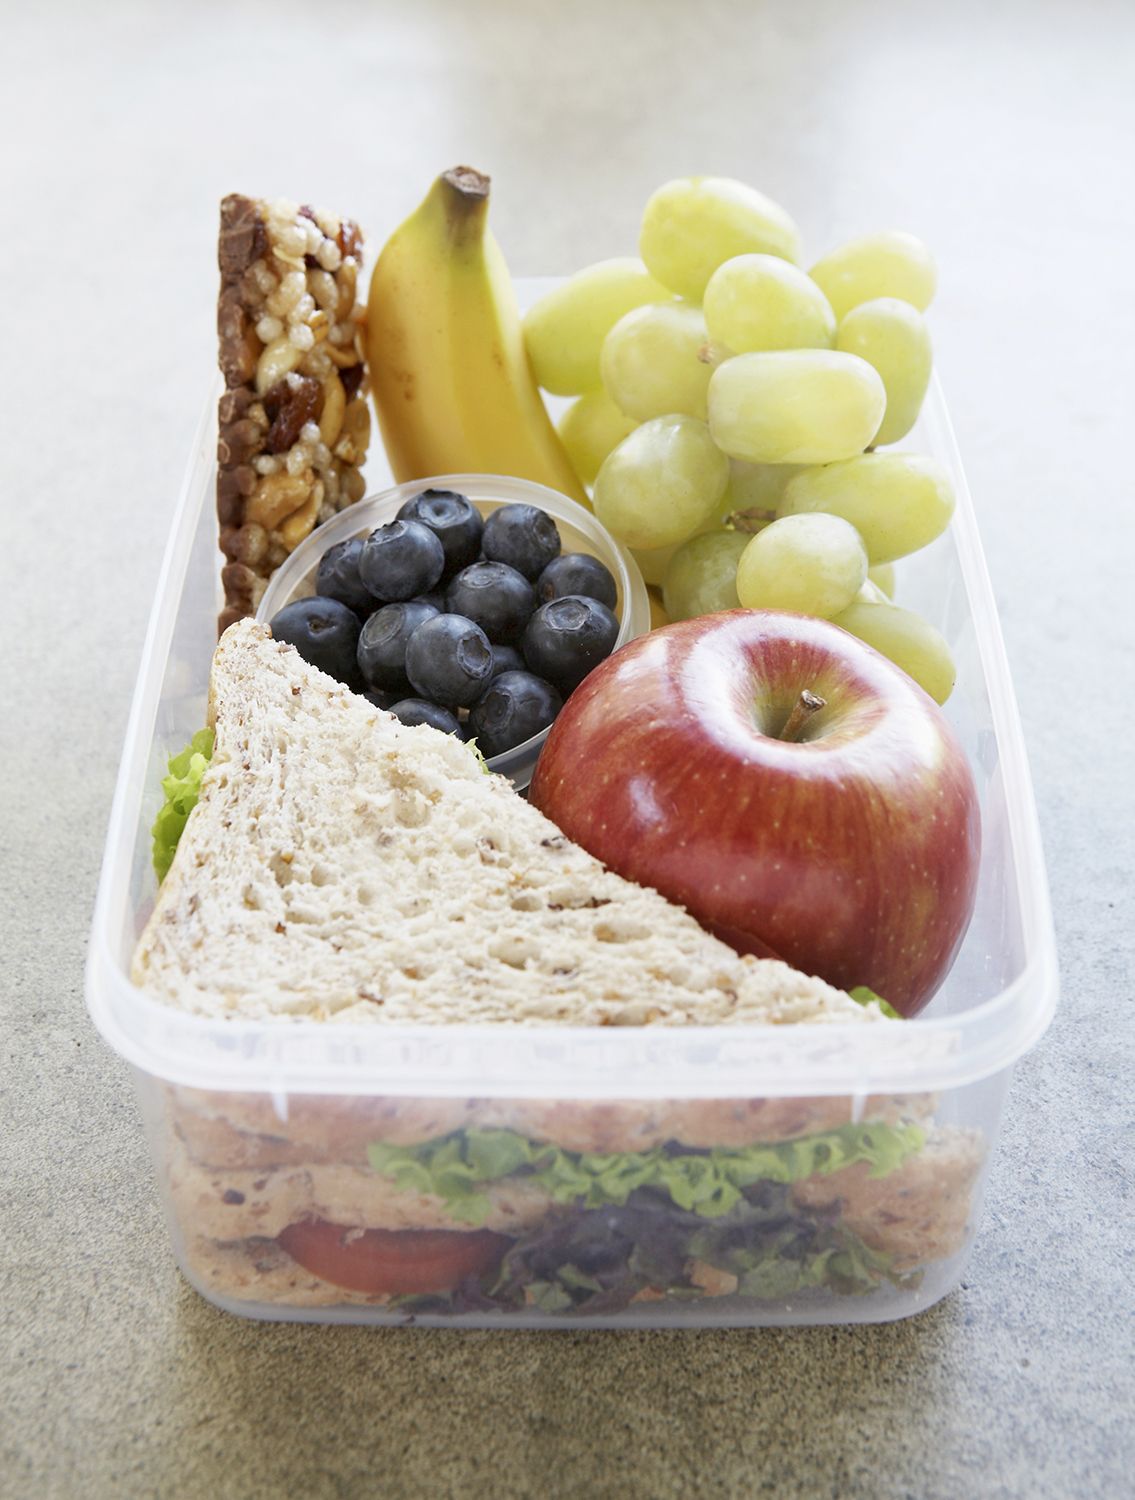 营养学家在他们孩子的午餐盒里装了什么